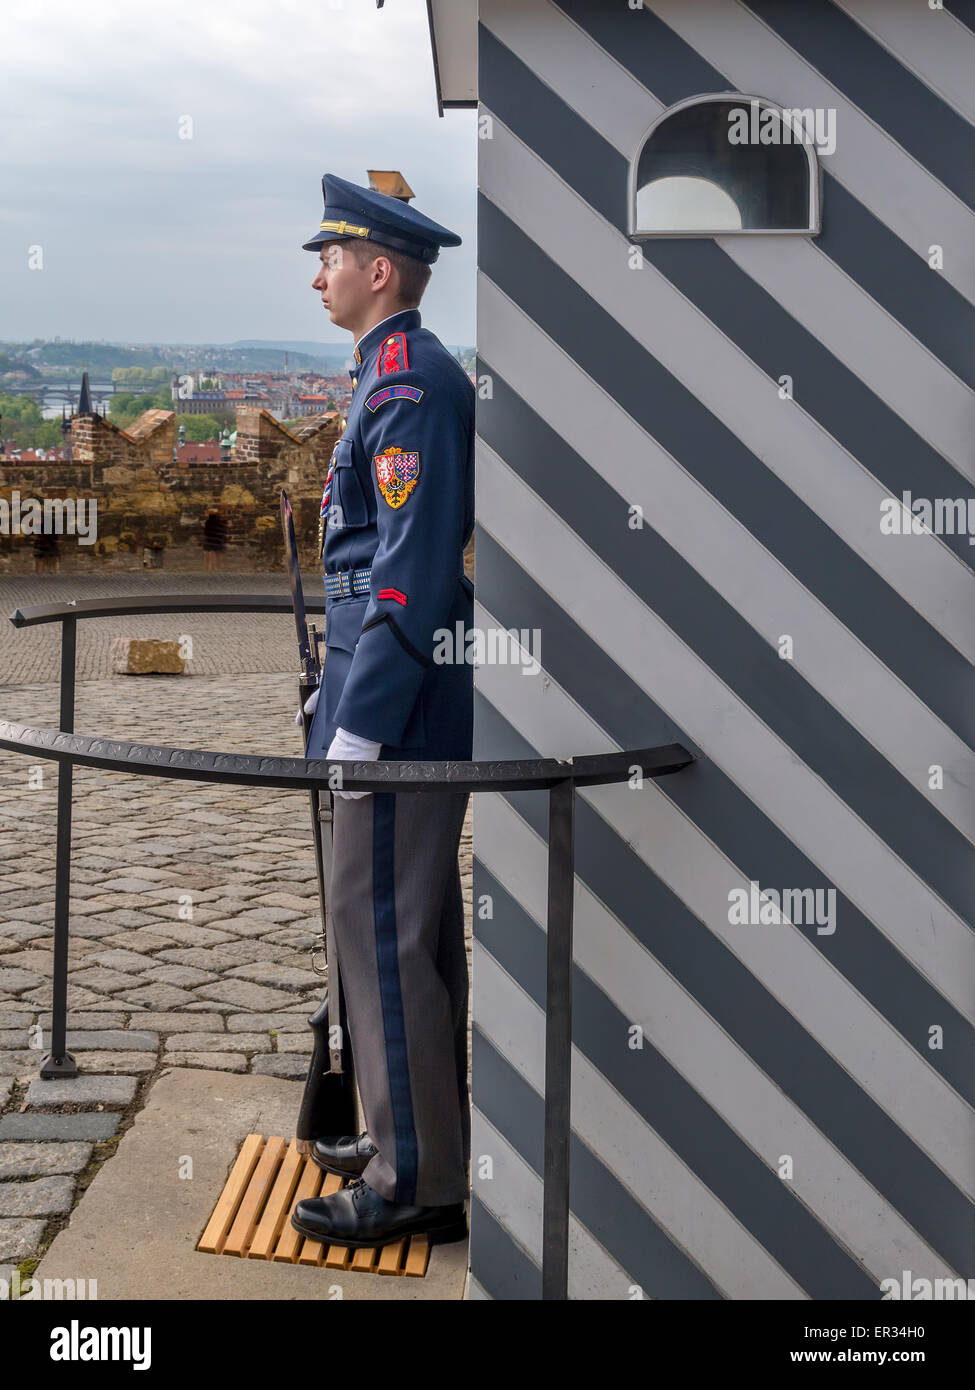 Praga, República Checa - Mayo 02, 2015: La guardia de honor en el palacio presidencial en el castillo de Praga Foto de stock